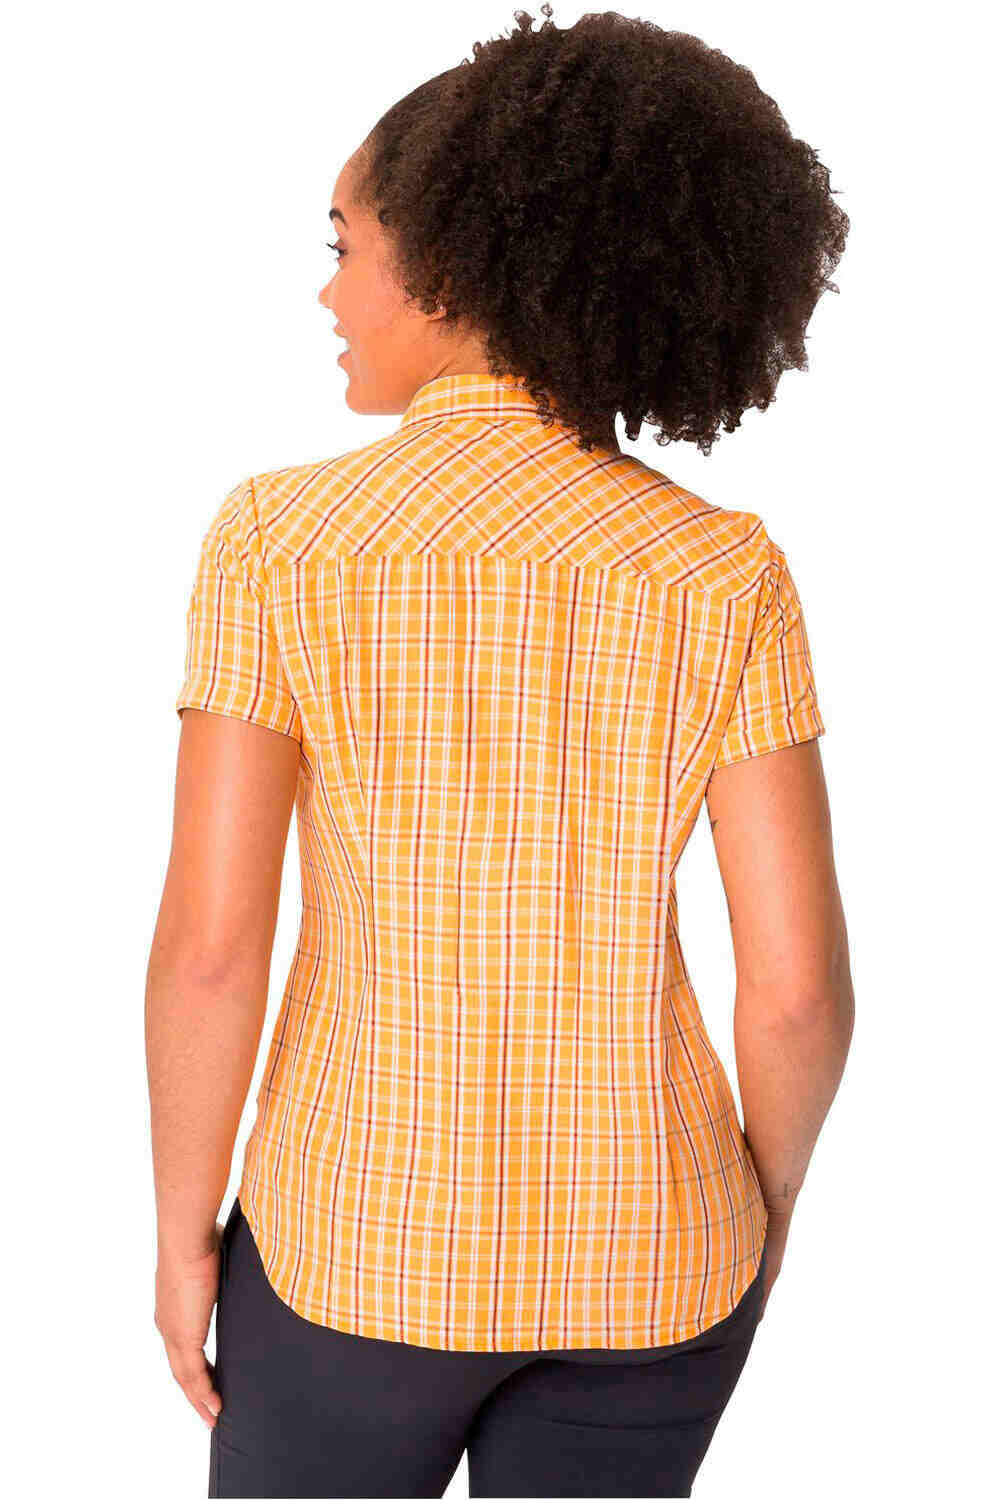 Vaude camisa montaña manga larga mujer Women  s Tacun Shirt II vista trasera